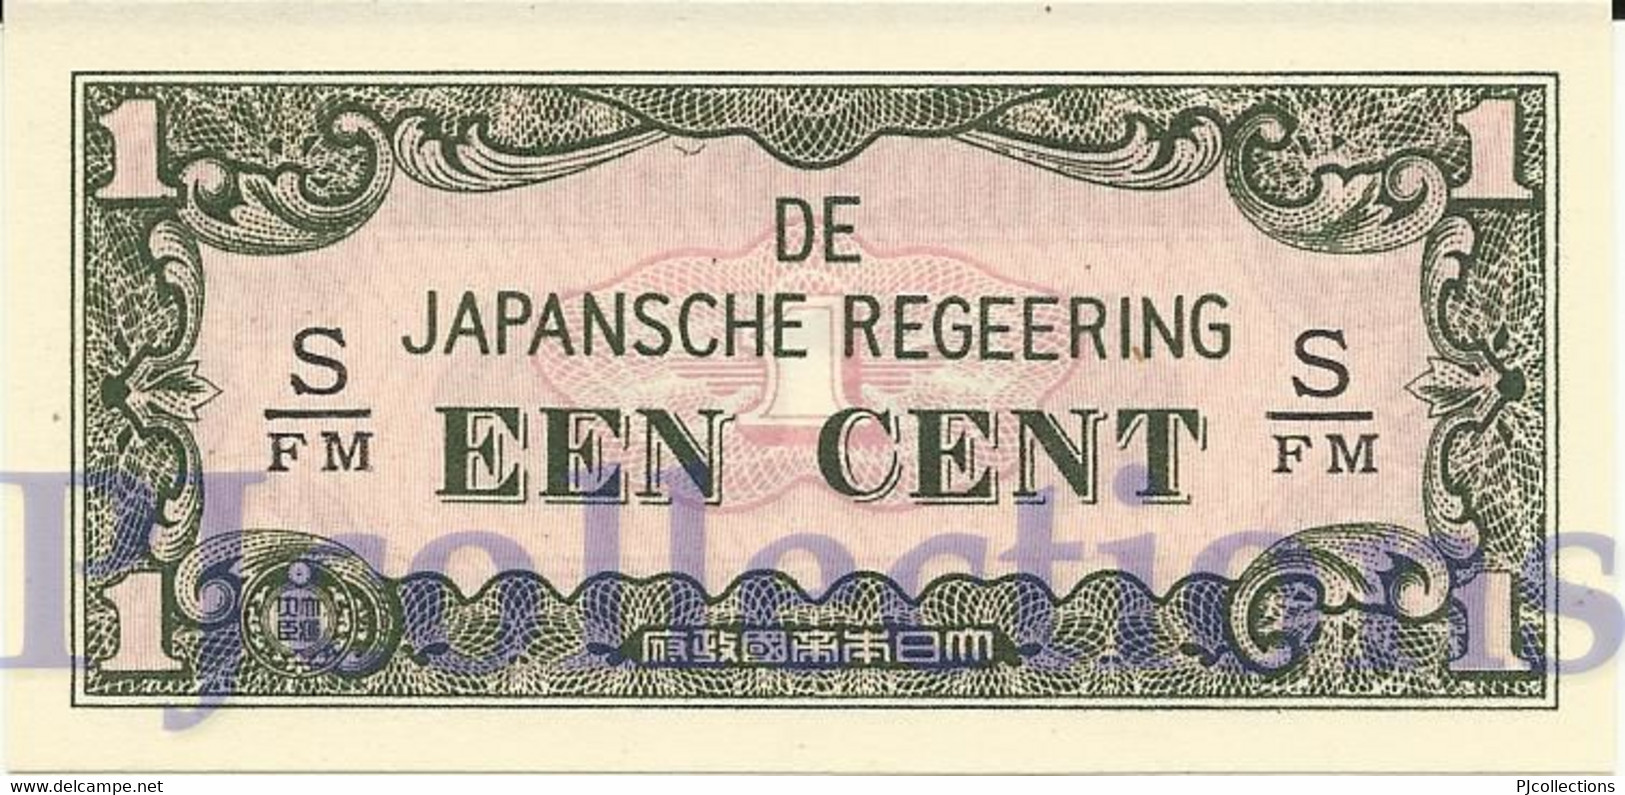 NETHERLANDS INDIES 1 CENT 1942 PICK 119b UNC - Indes Néerlandaises